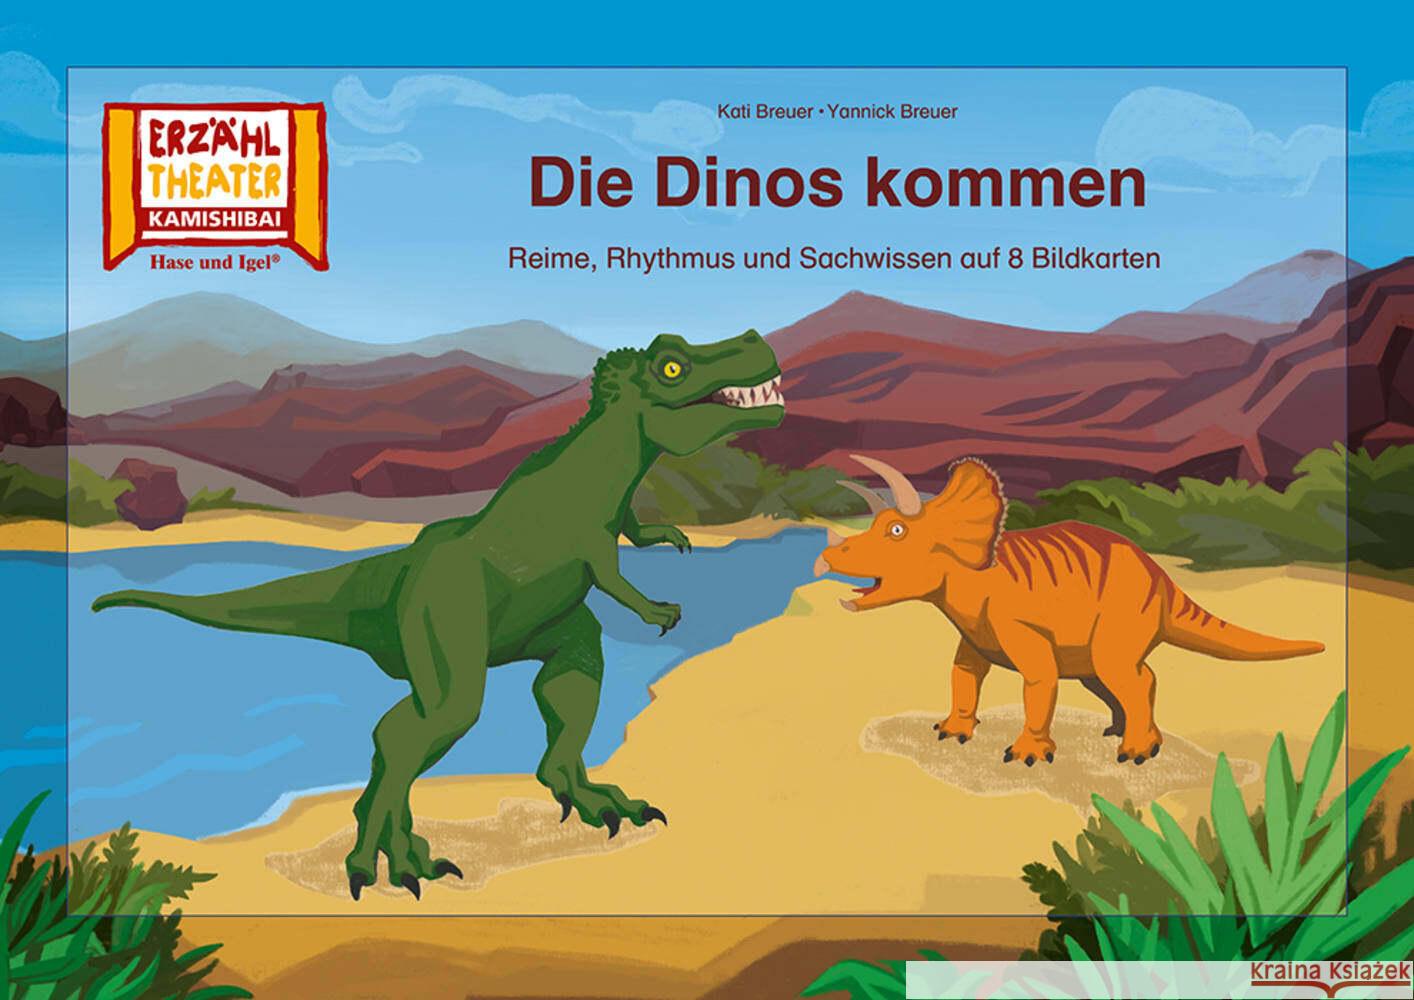 Die Dinos kommen / Kamishibai Bildkarten Breuer, Kati, Breuer, Yannick 4260505832728 Hase und Igel